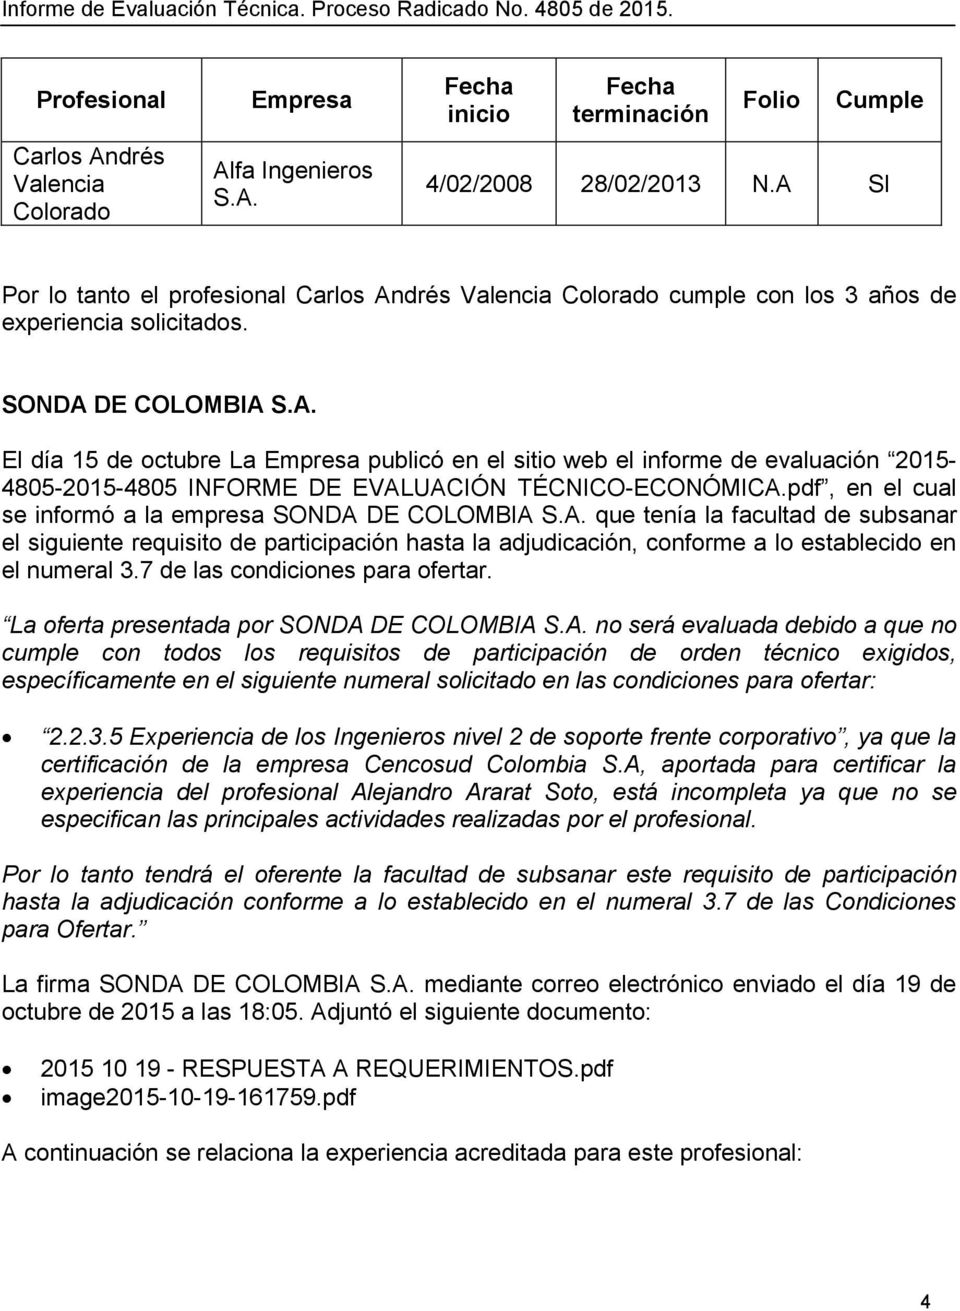 pdf, en el cual se informó a la empresa SONDA DE COLOMBIA S.A. que tenía la facultad de subsanar el siguiente requisito de participación hasta la adjudicación, conforme a lo establecido en el numeral 3.